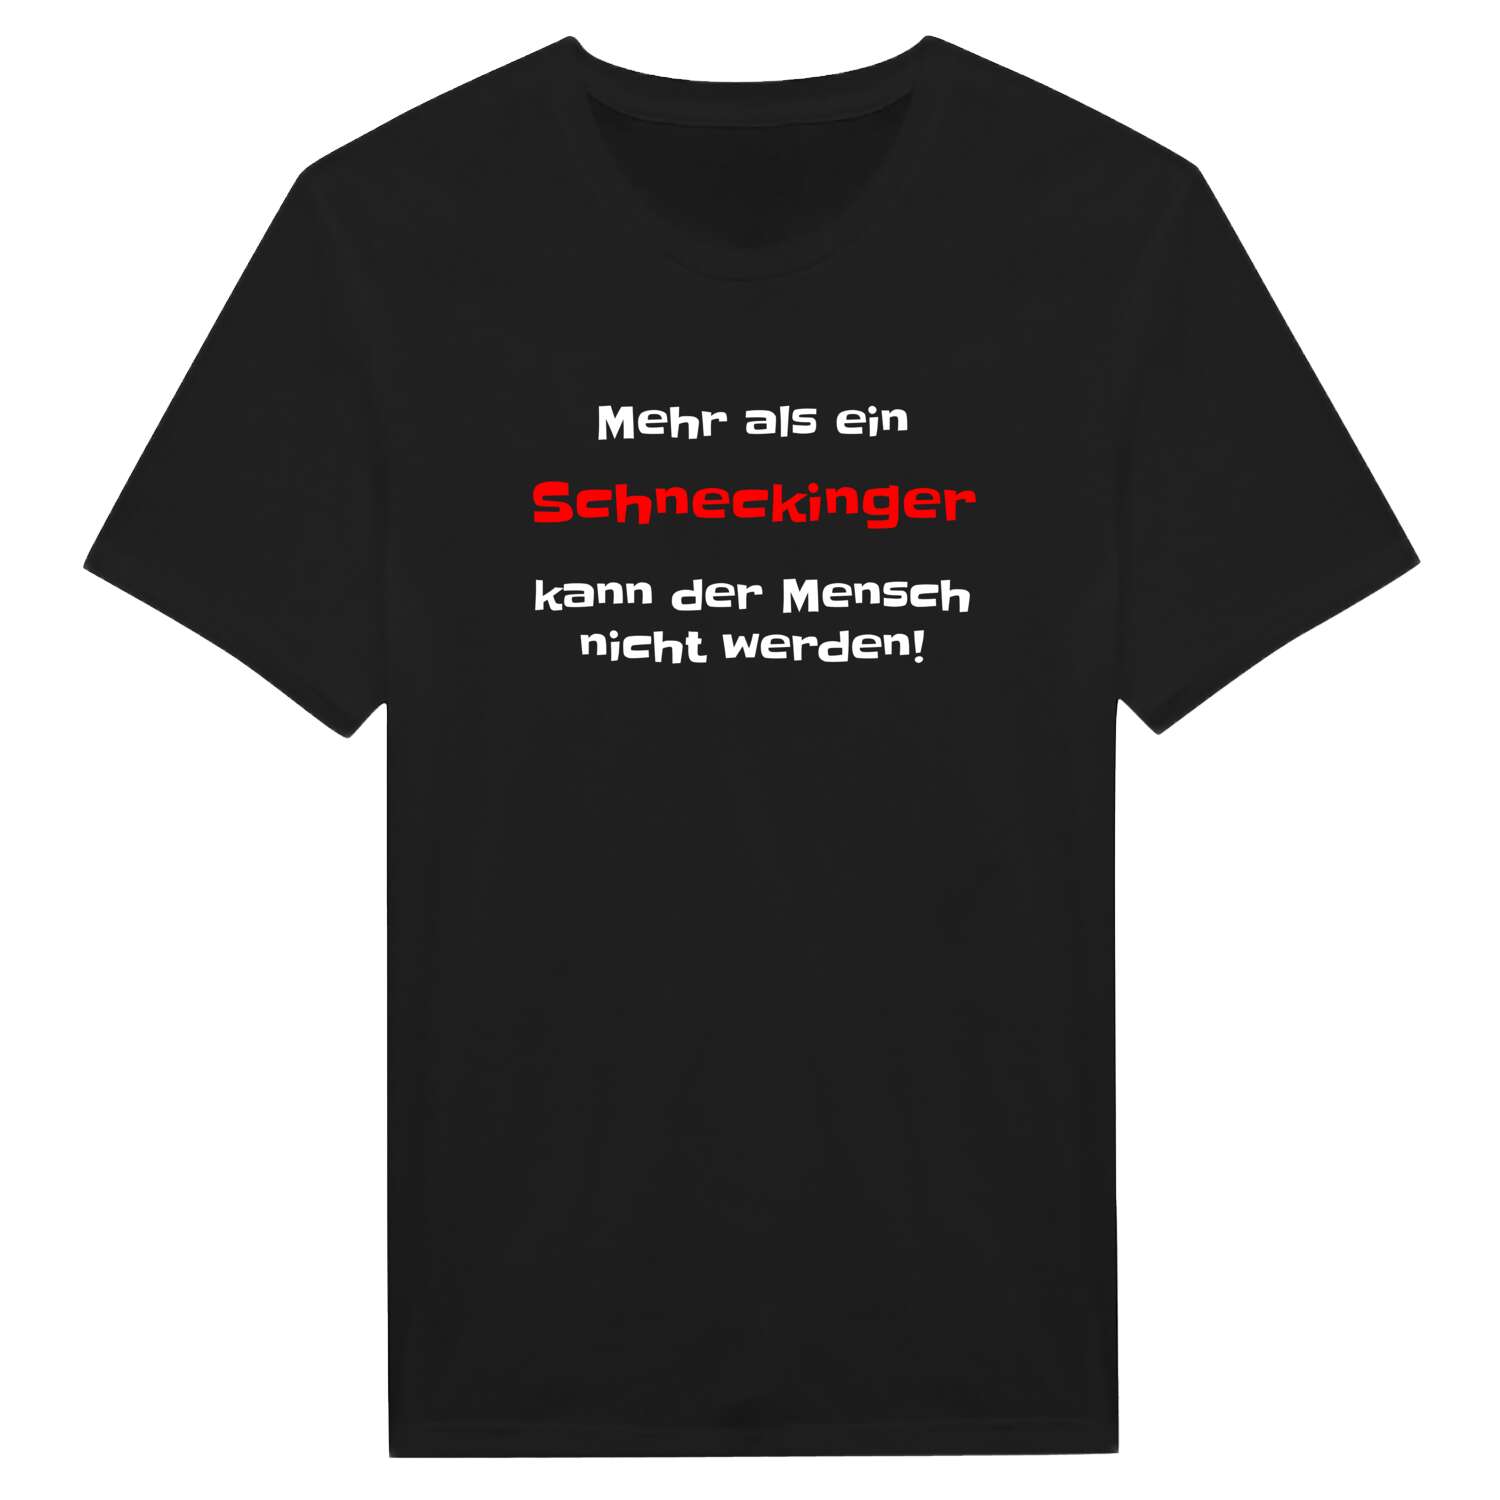 Schnecking T-Shirt »Mehr als ein«